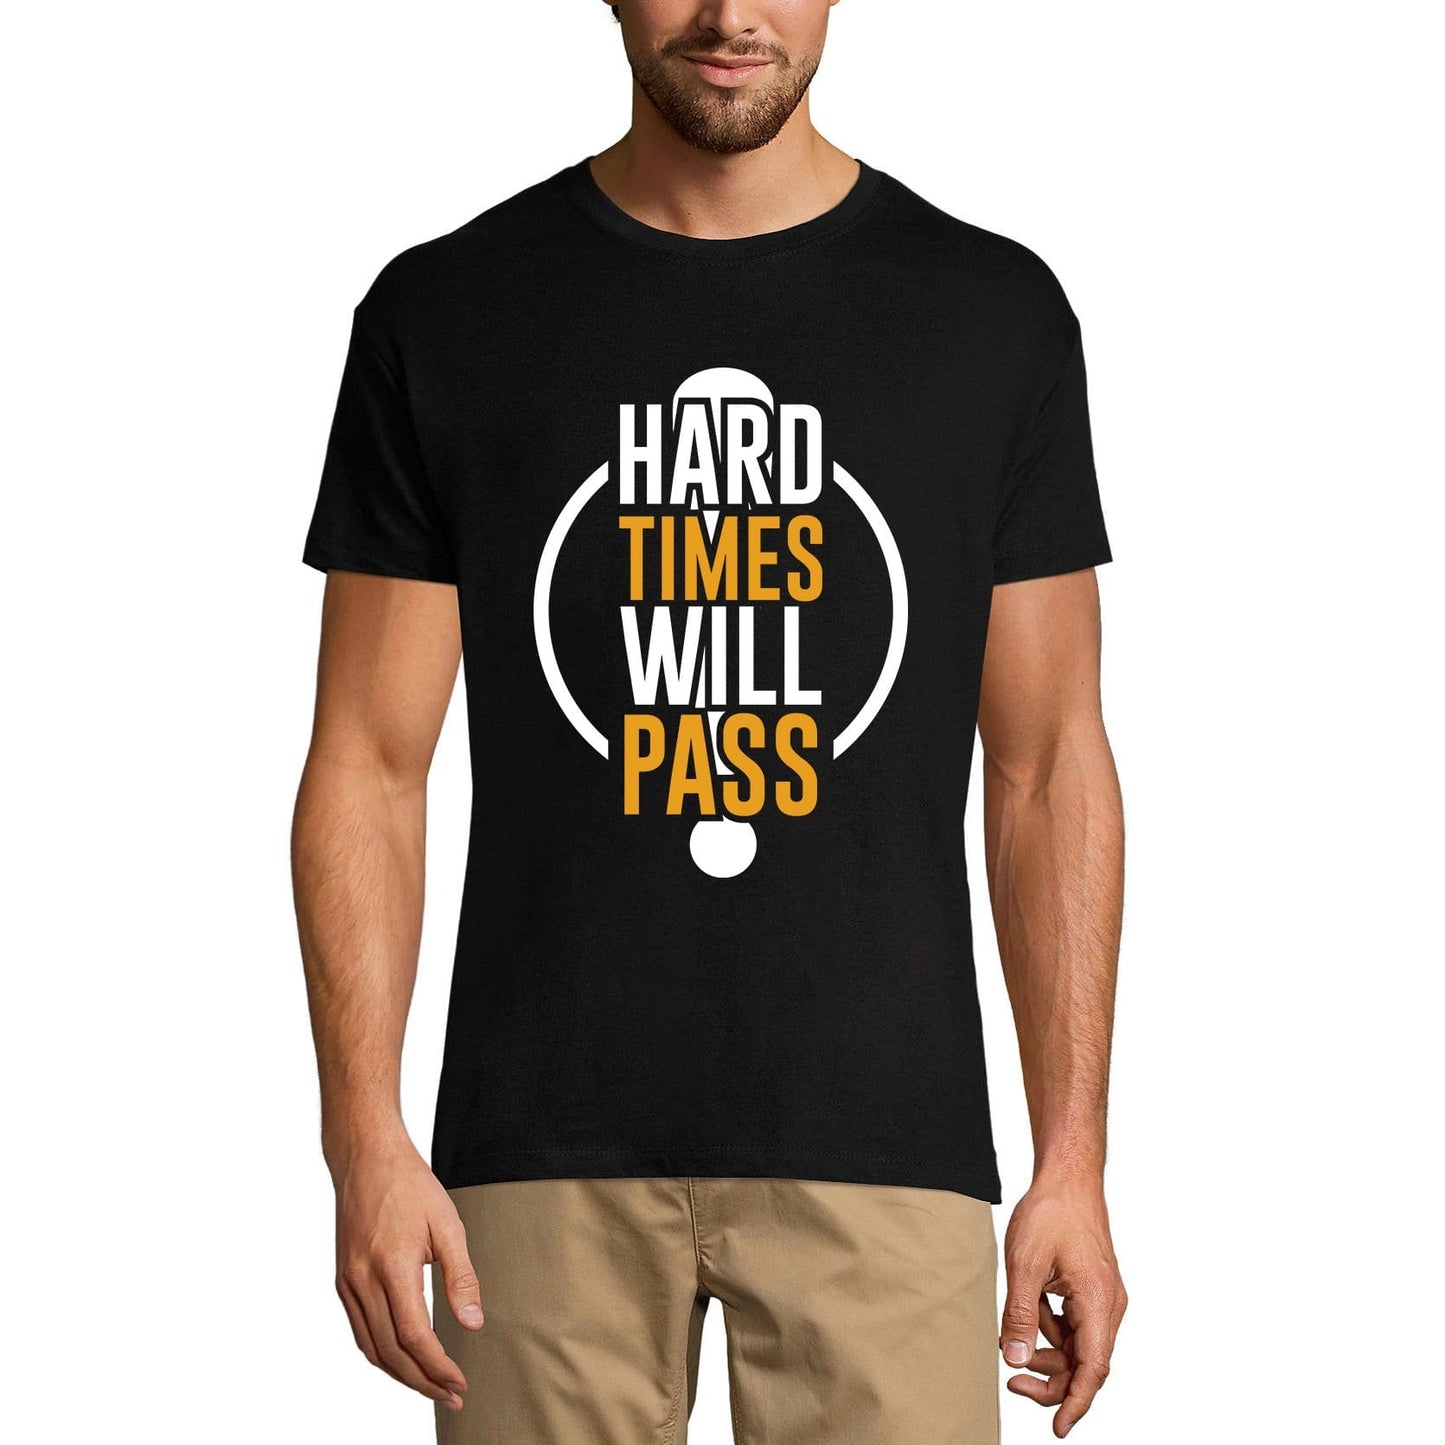 ULTRABASIC Men's T-Shirt Hard Times Will Pass - Workout Motivational Shirt